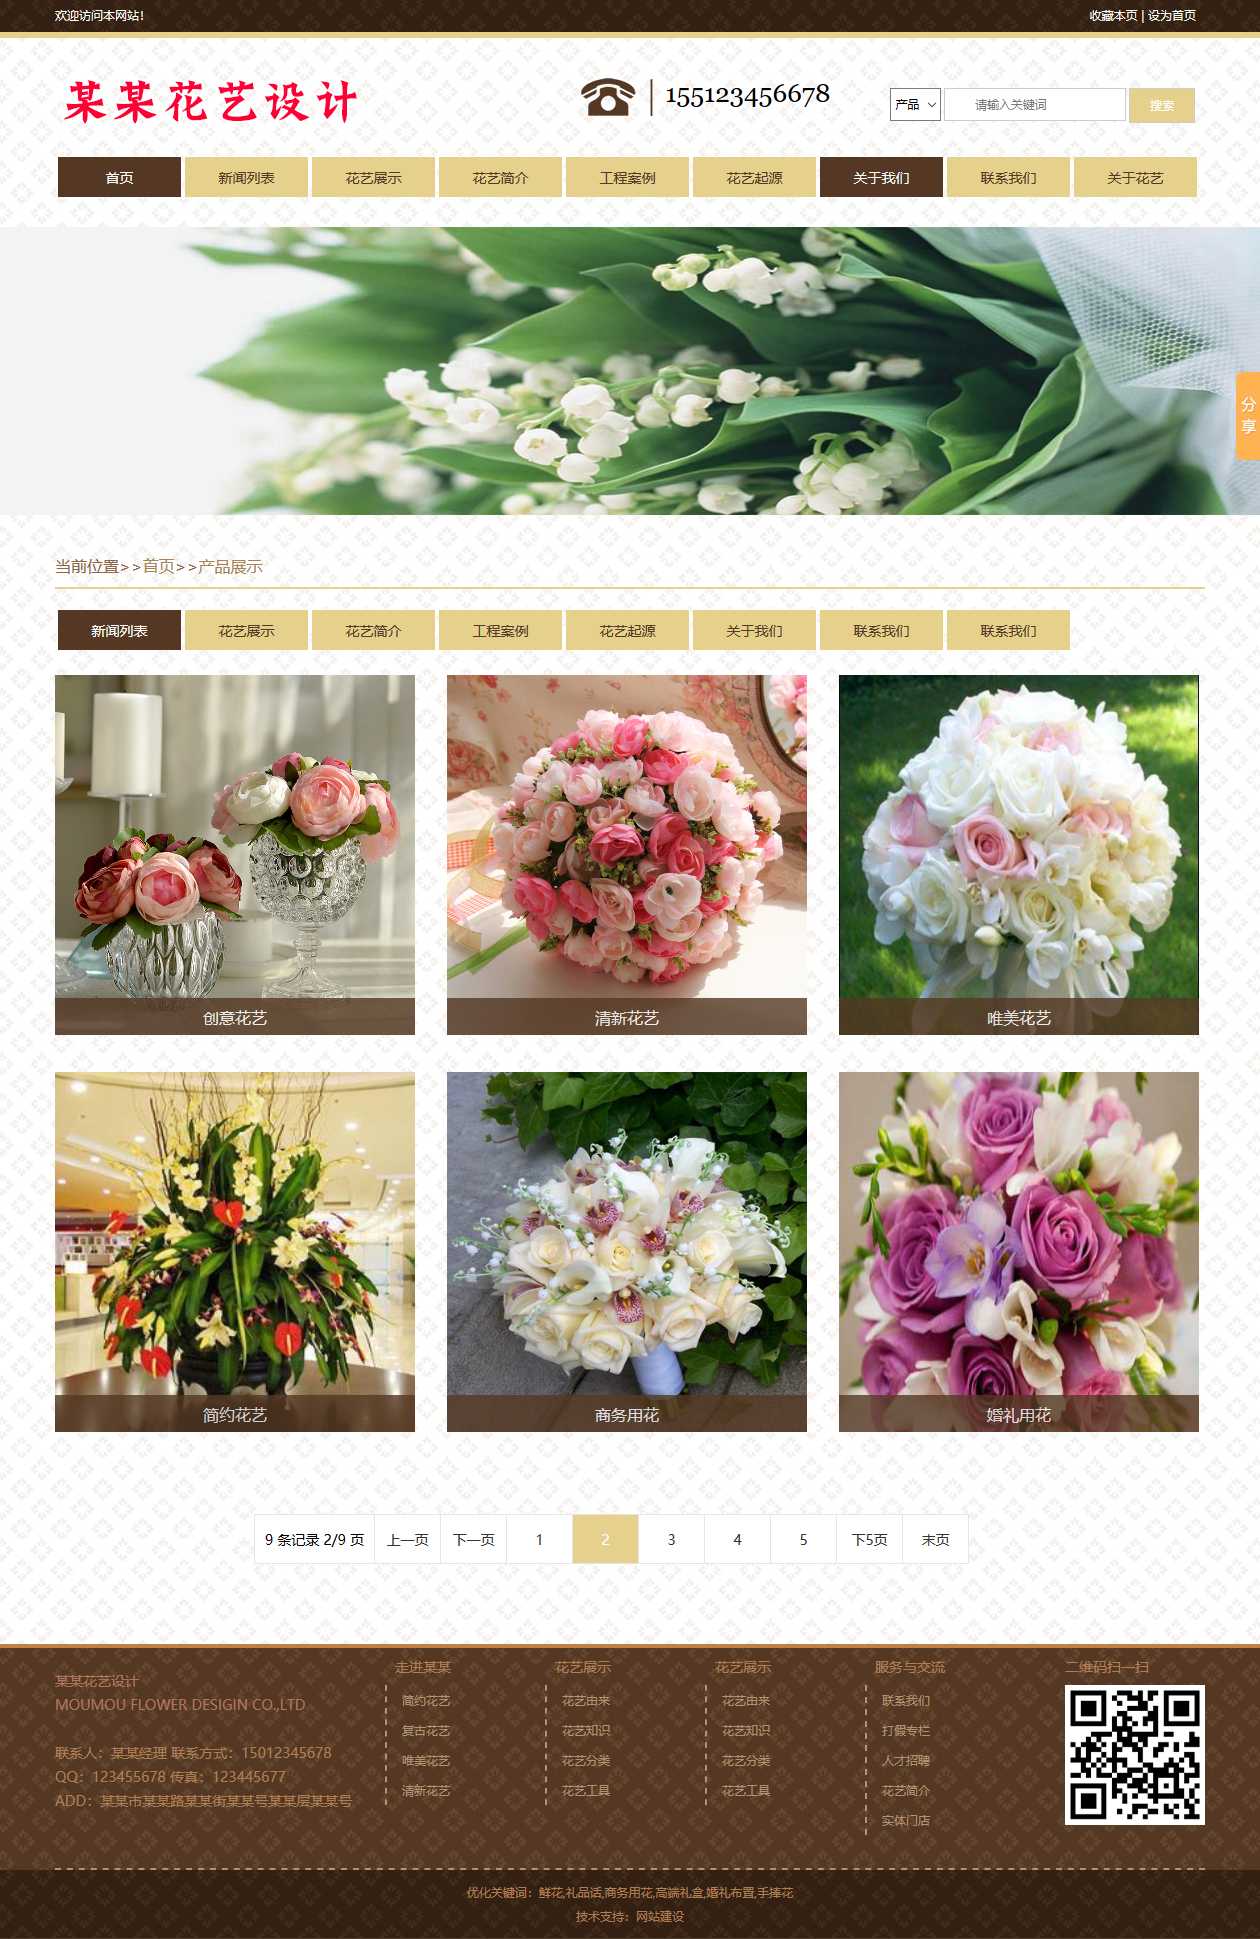 花卉、鲜花网站图片列表效果图